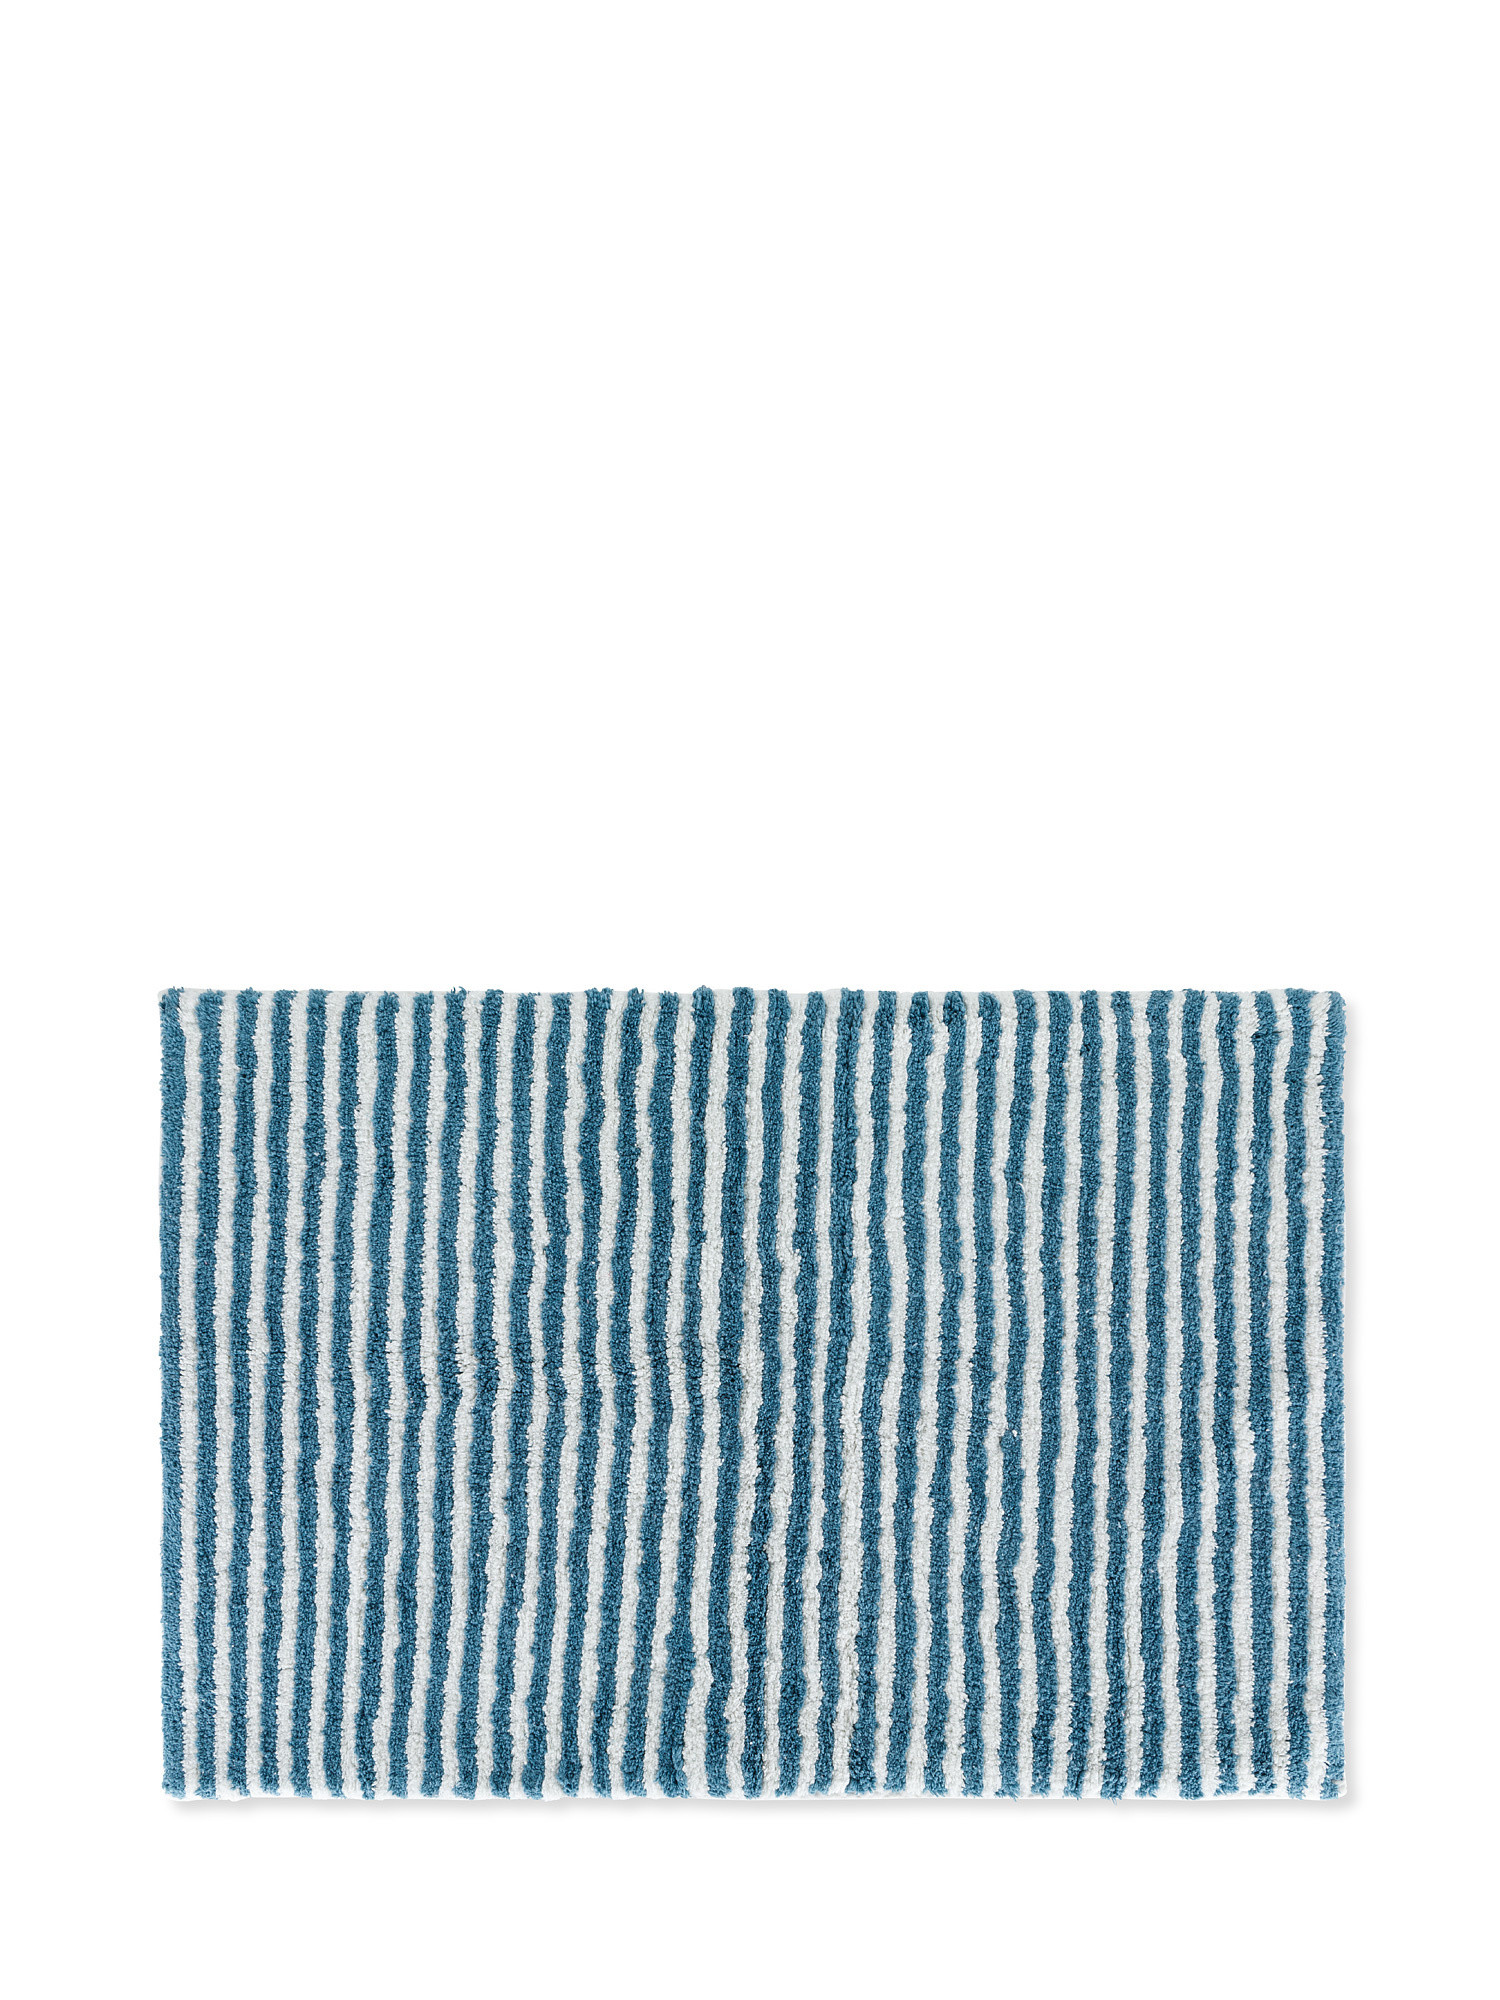 Tappeto bagno cotone motivo a righe, Blu, large